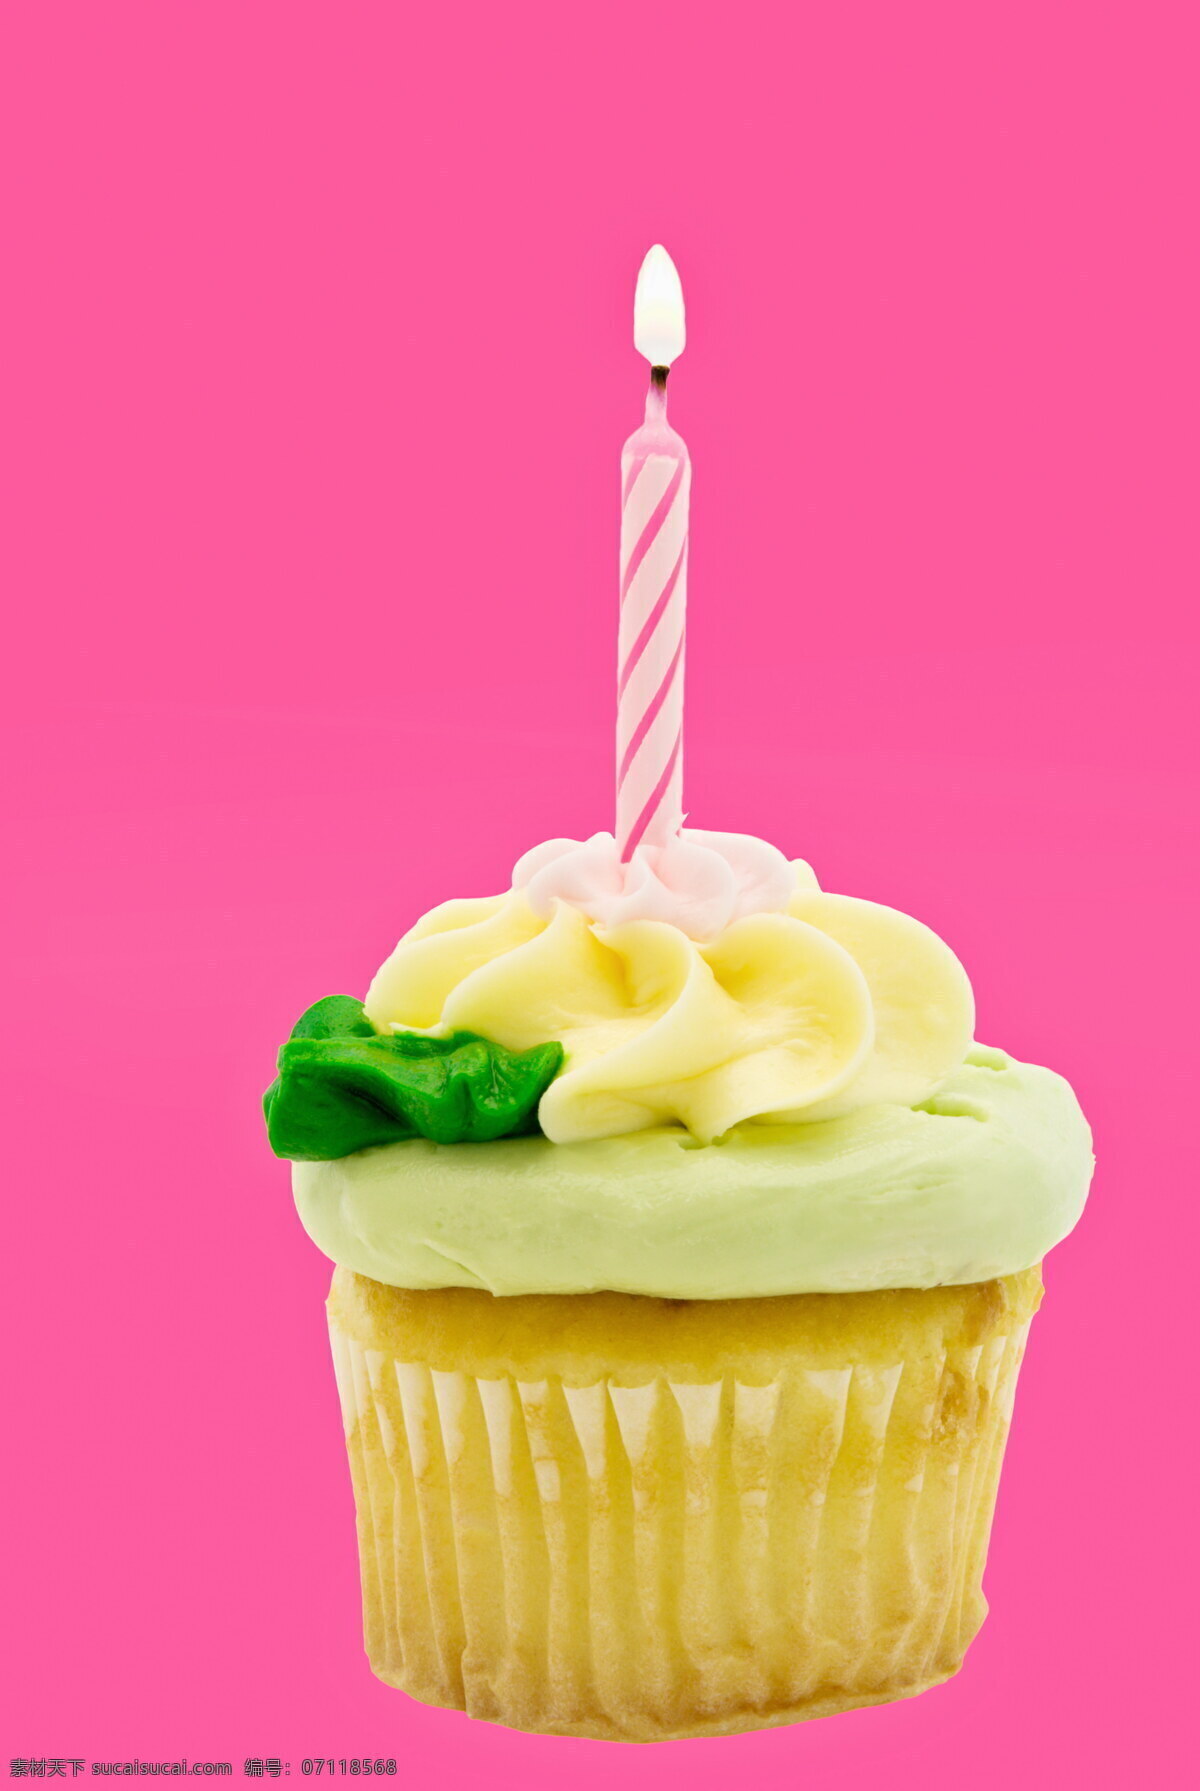 黄色蛋糕 黄色 蛋糕 糕点 奶油蛋糕 生日蛋糕 花朵 彩色蛋糕 盘子 蜡烛 其他类别 餐饮美食 粉色